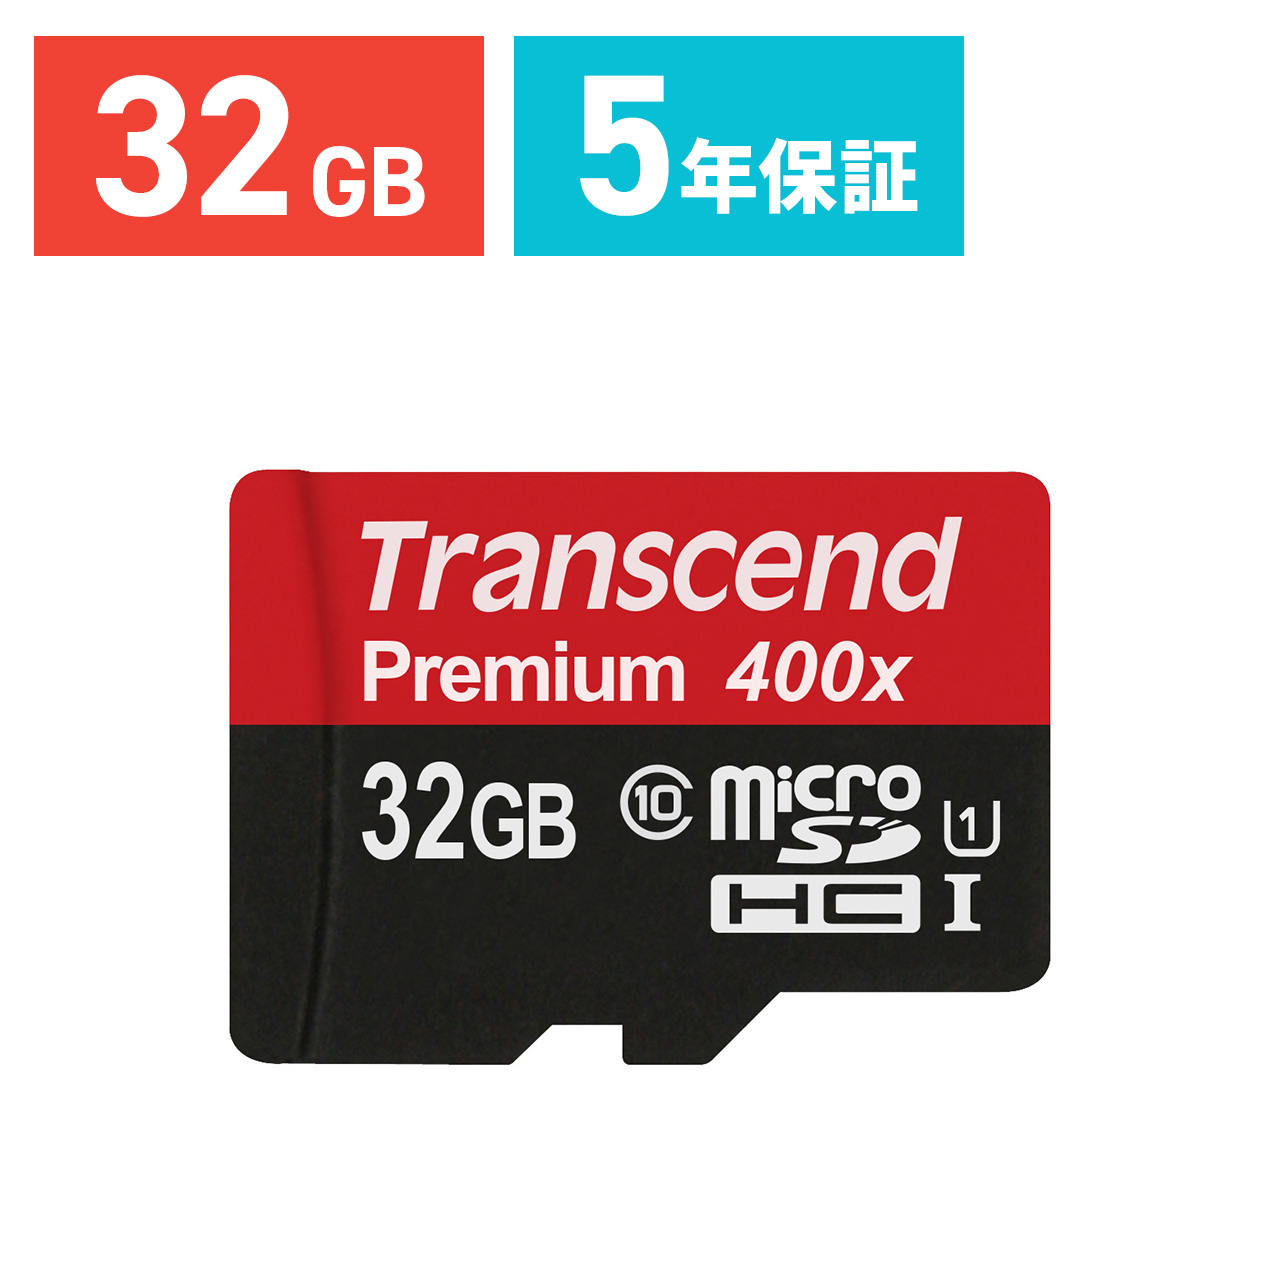 micro SD マイクロSDカード 32GB 3個